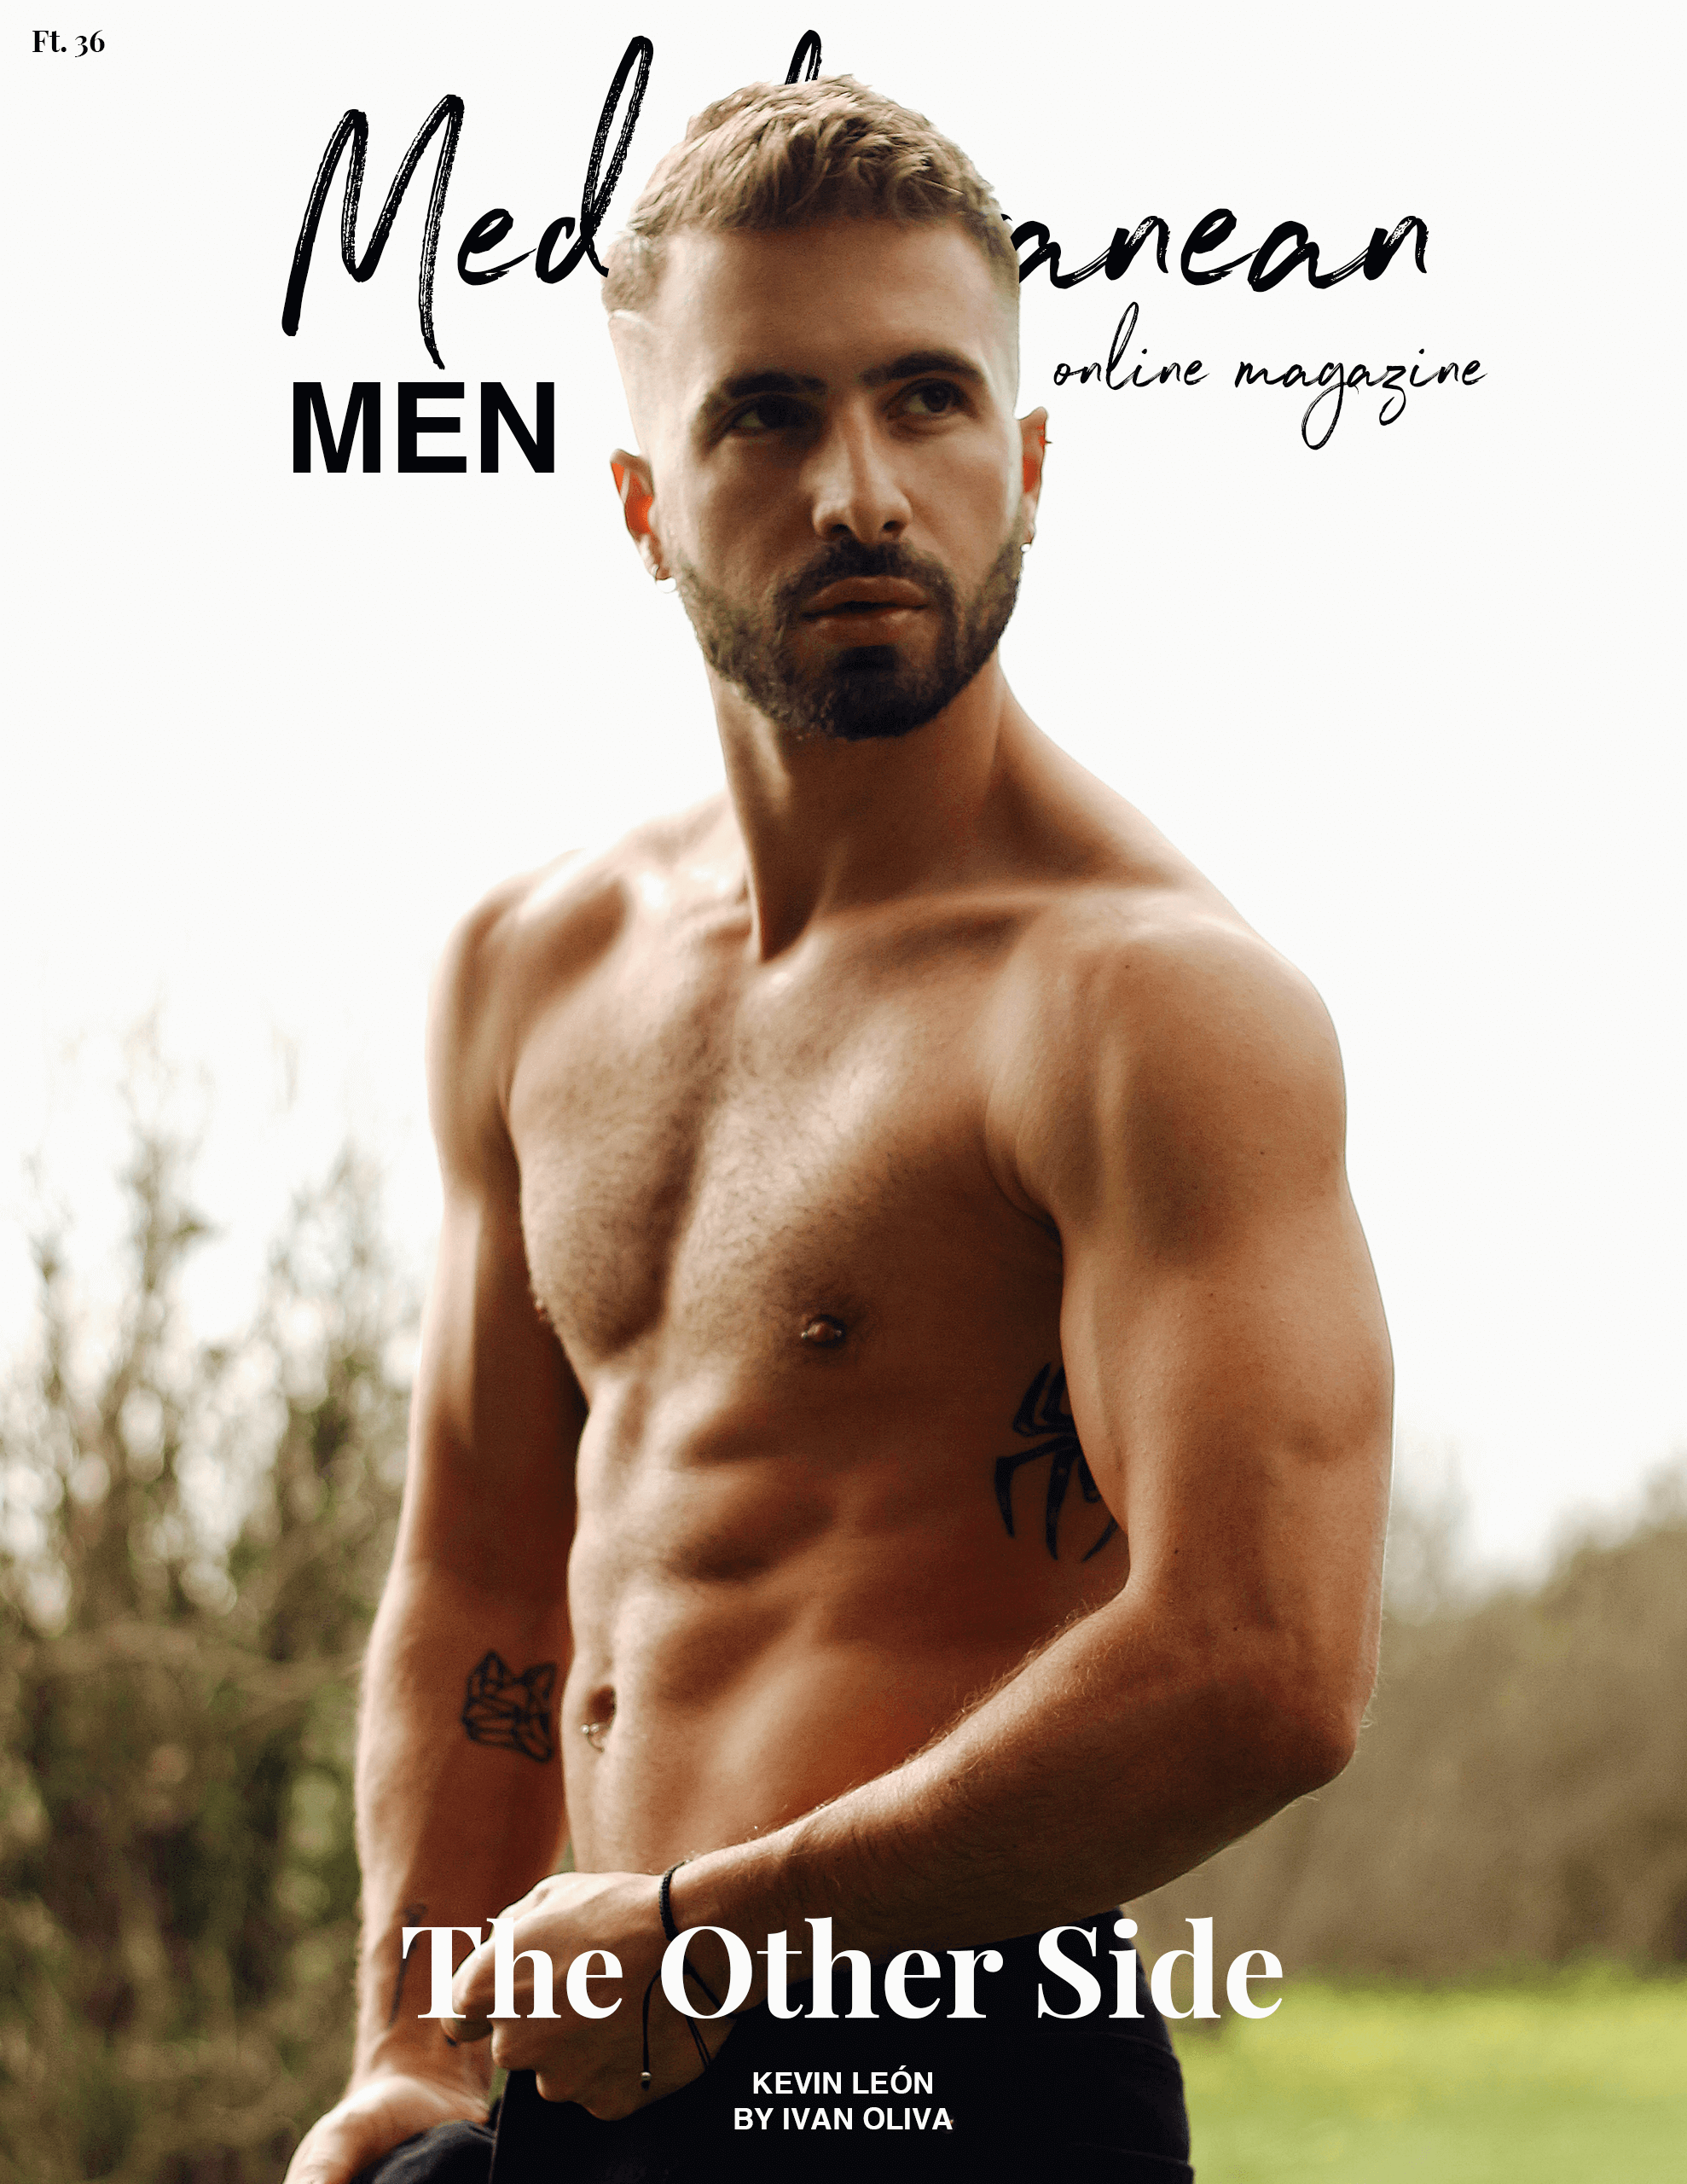 Mediterranean Men Magazine